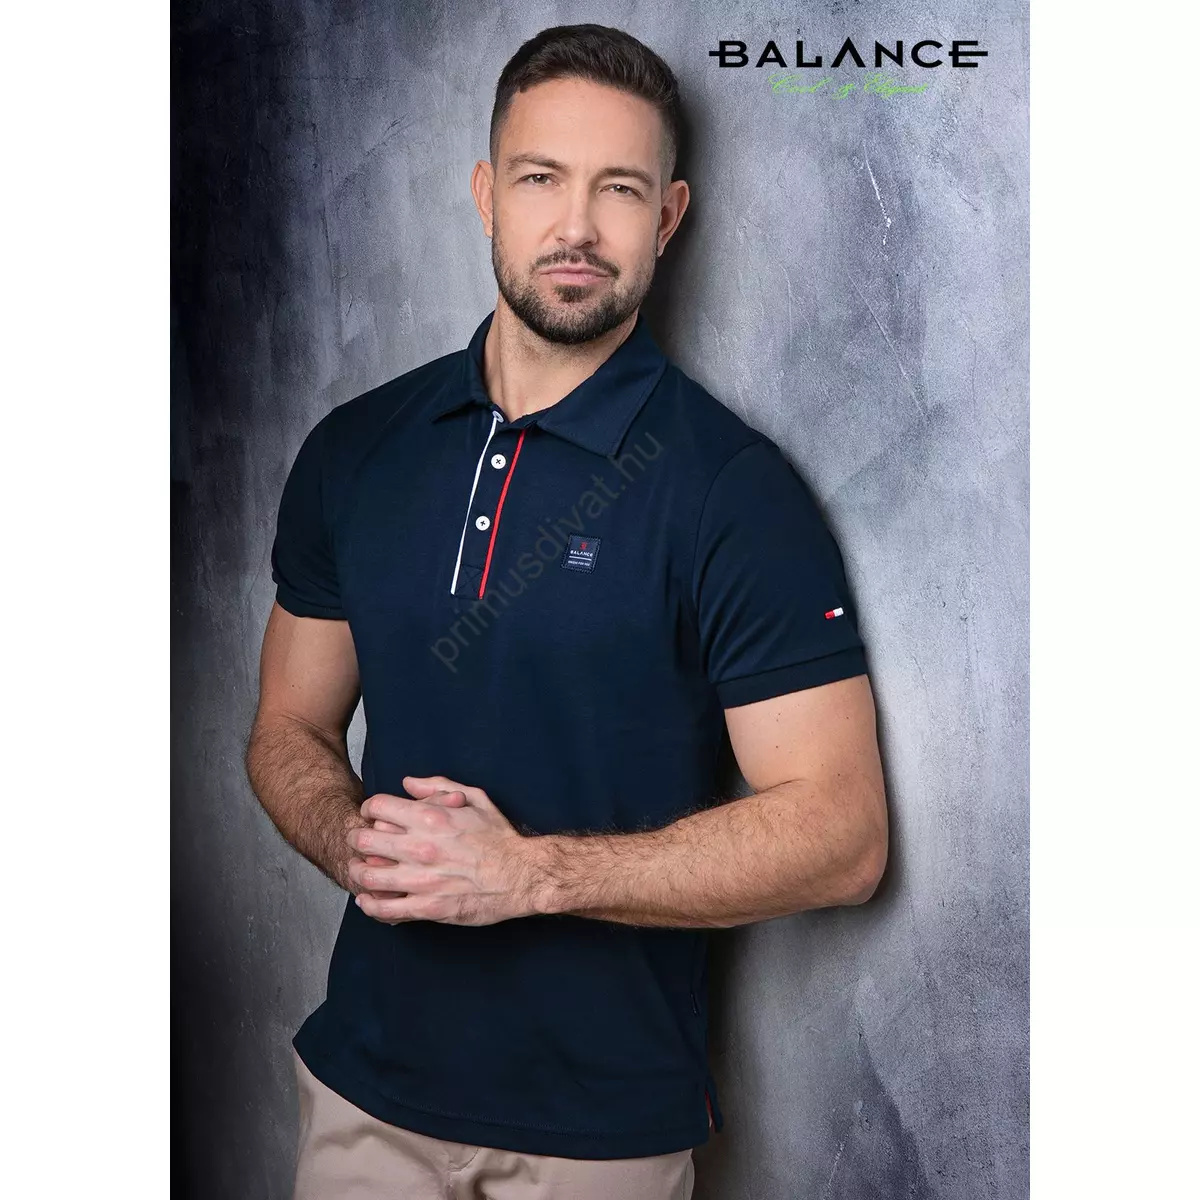 Balance sötétkék rugalmas pamut anyagú rövid ujjú, gombos-galléros nyakú Inter póló, gombolópántján piros-fehér díszítéssel